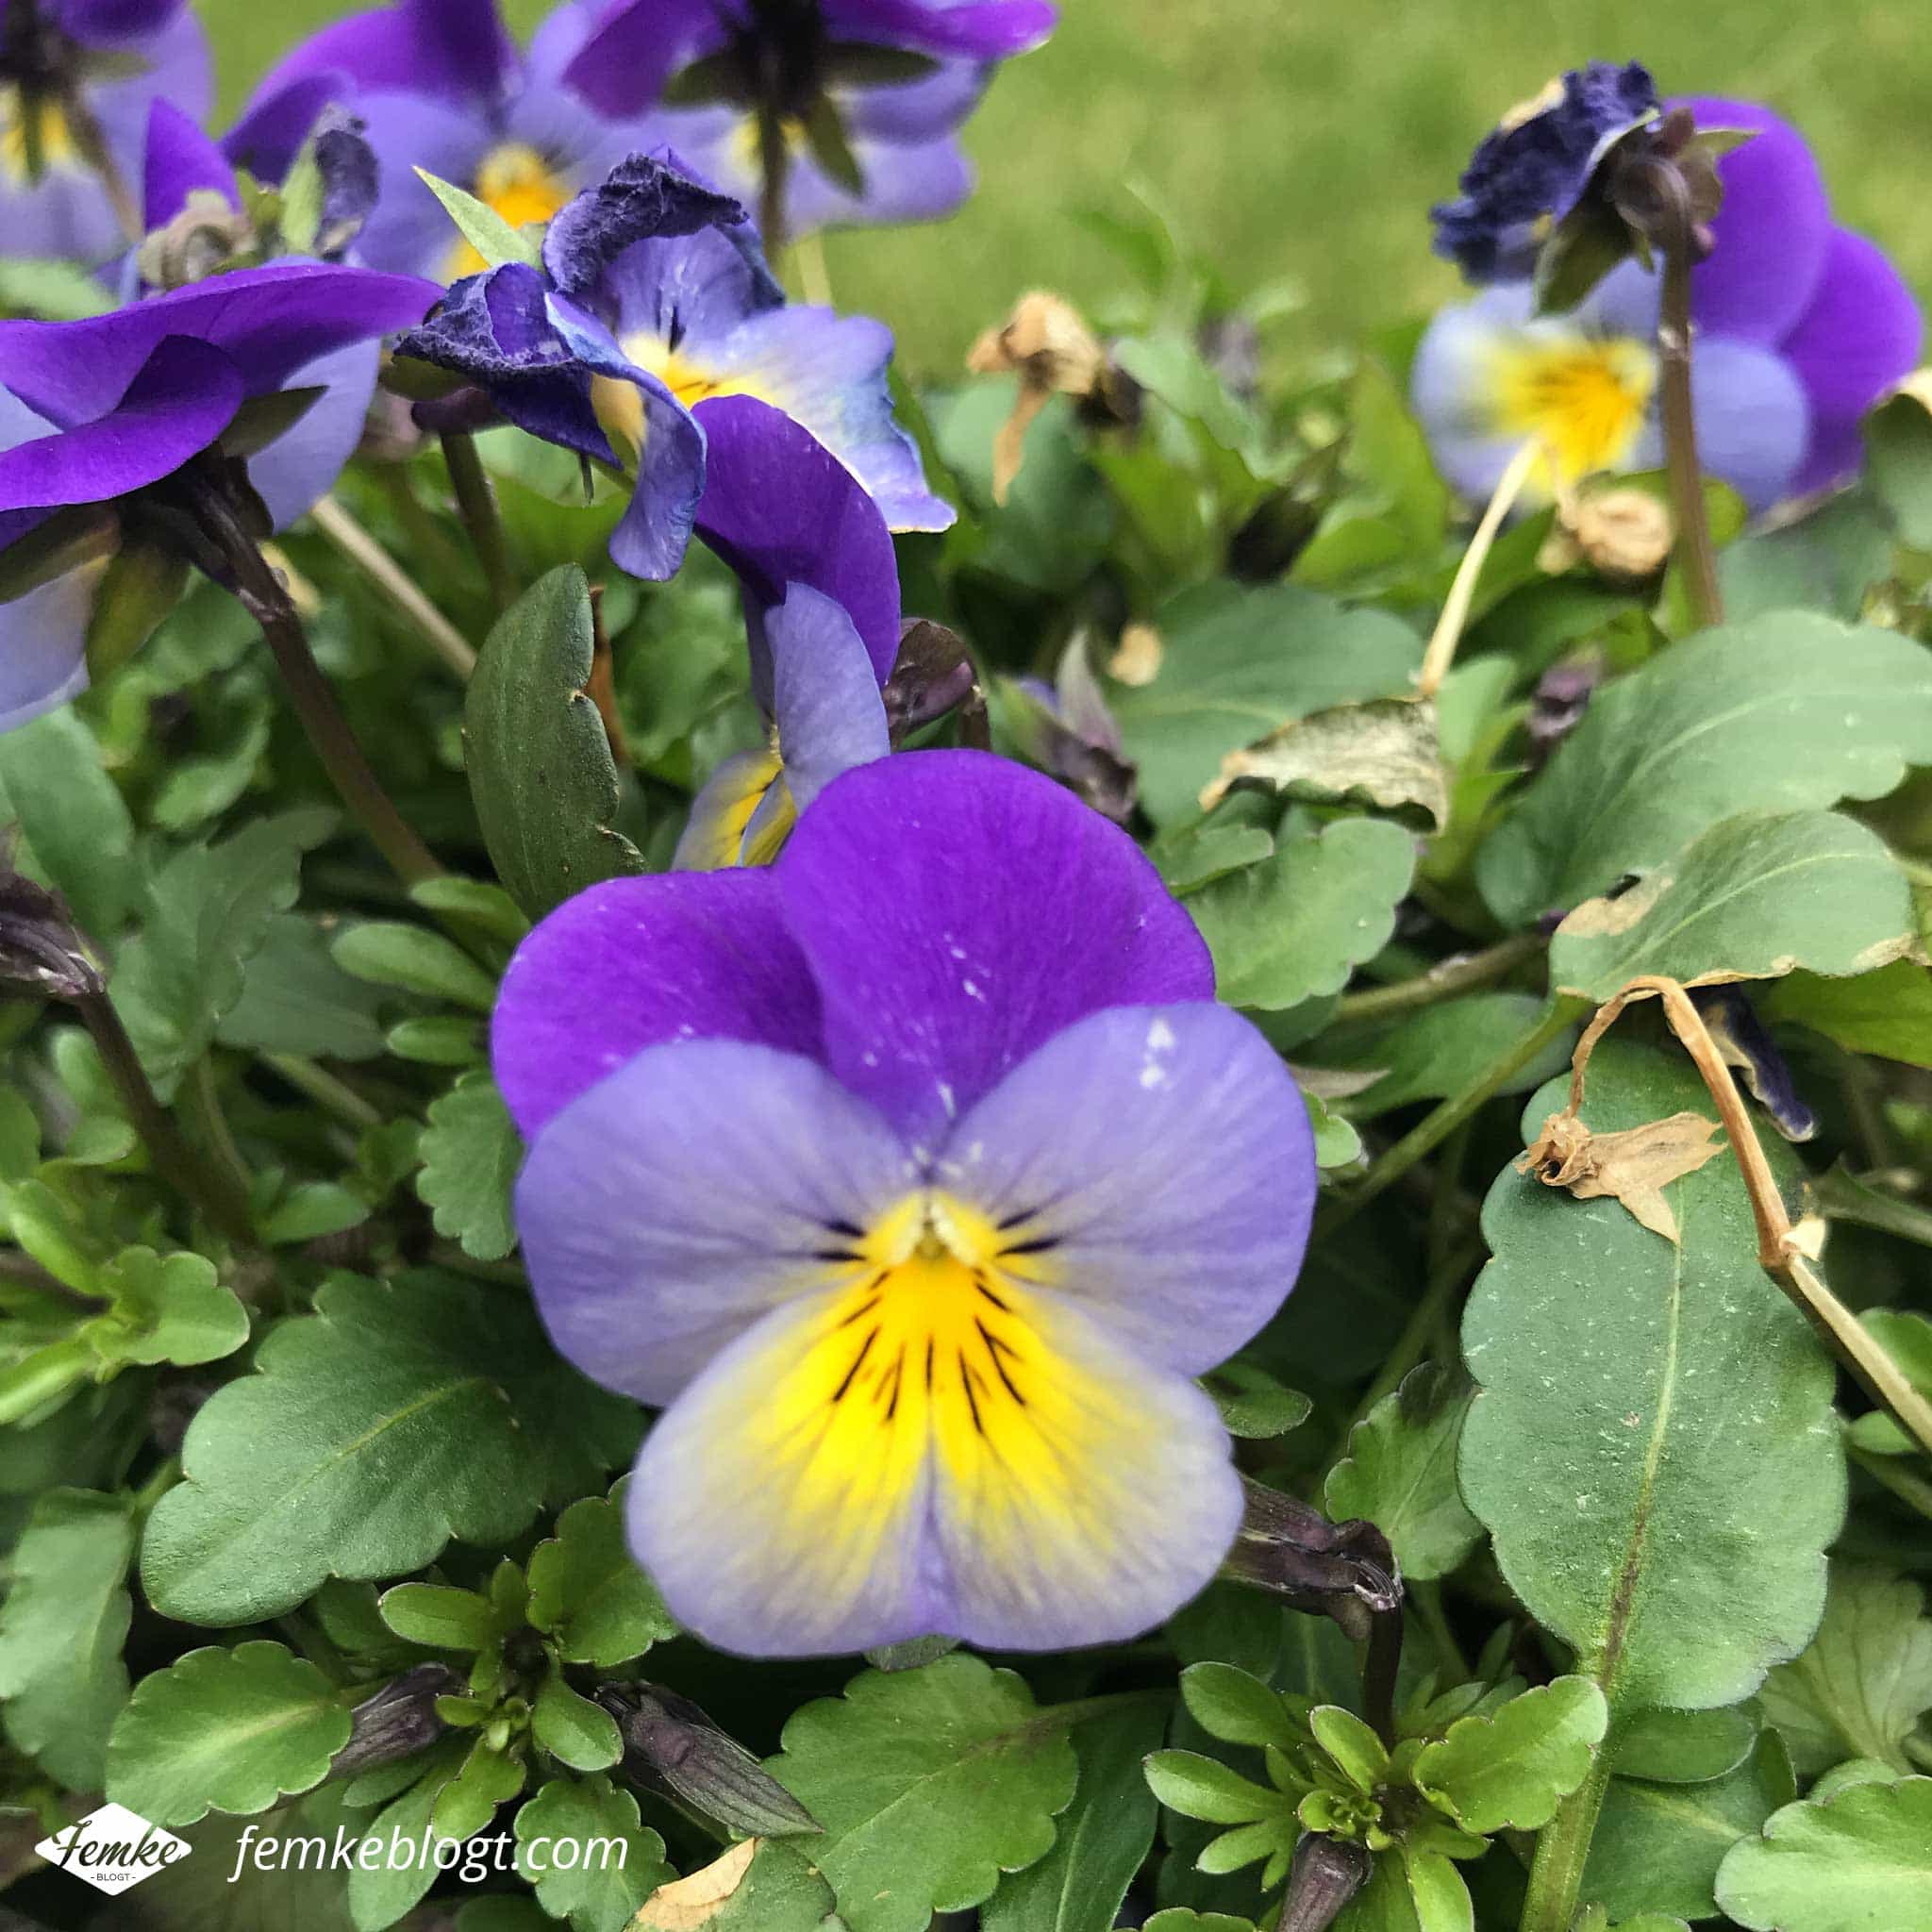 Maandoverzicht maart | Lente, viooltjes in de tuin!